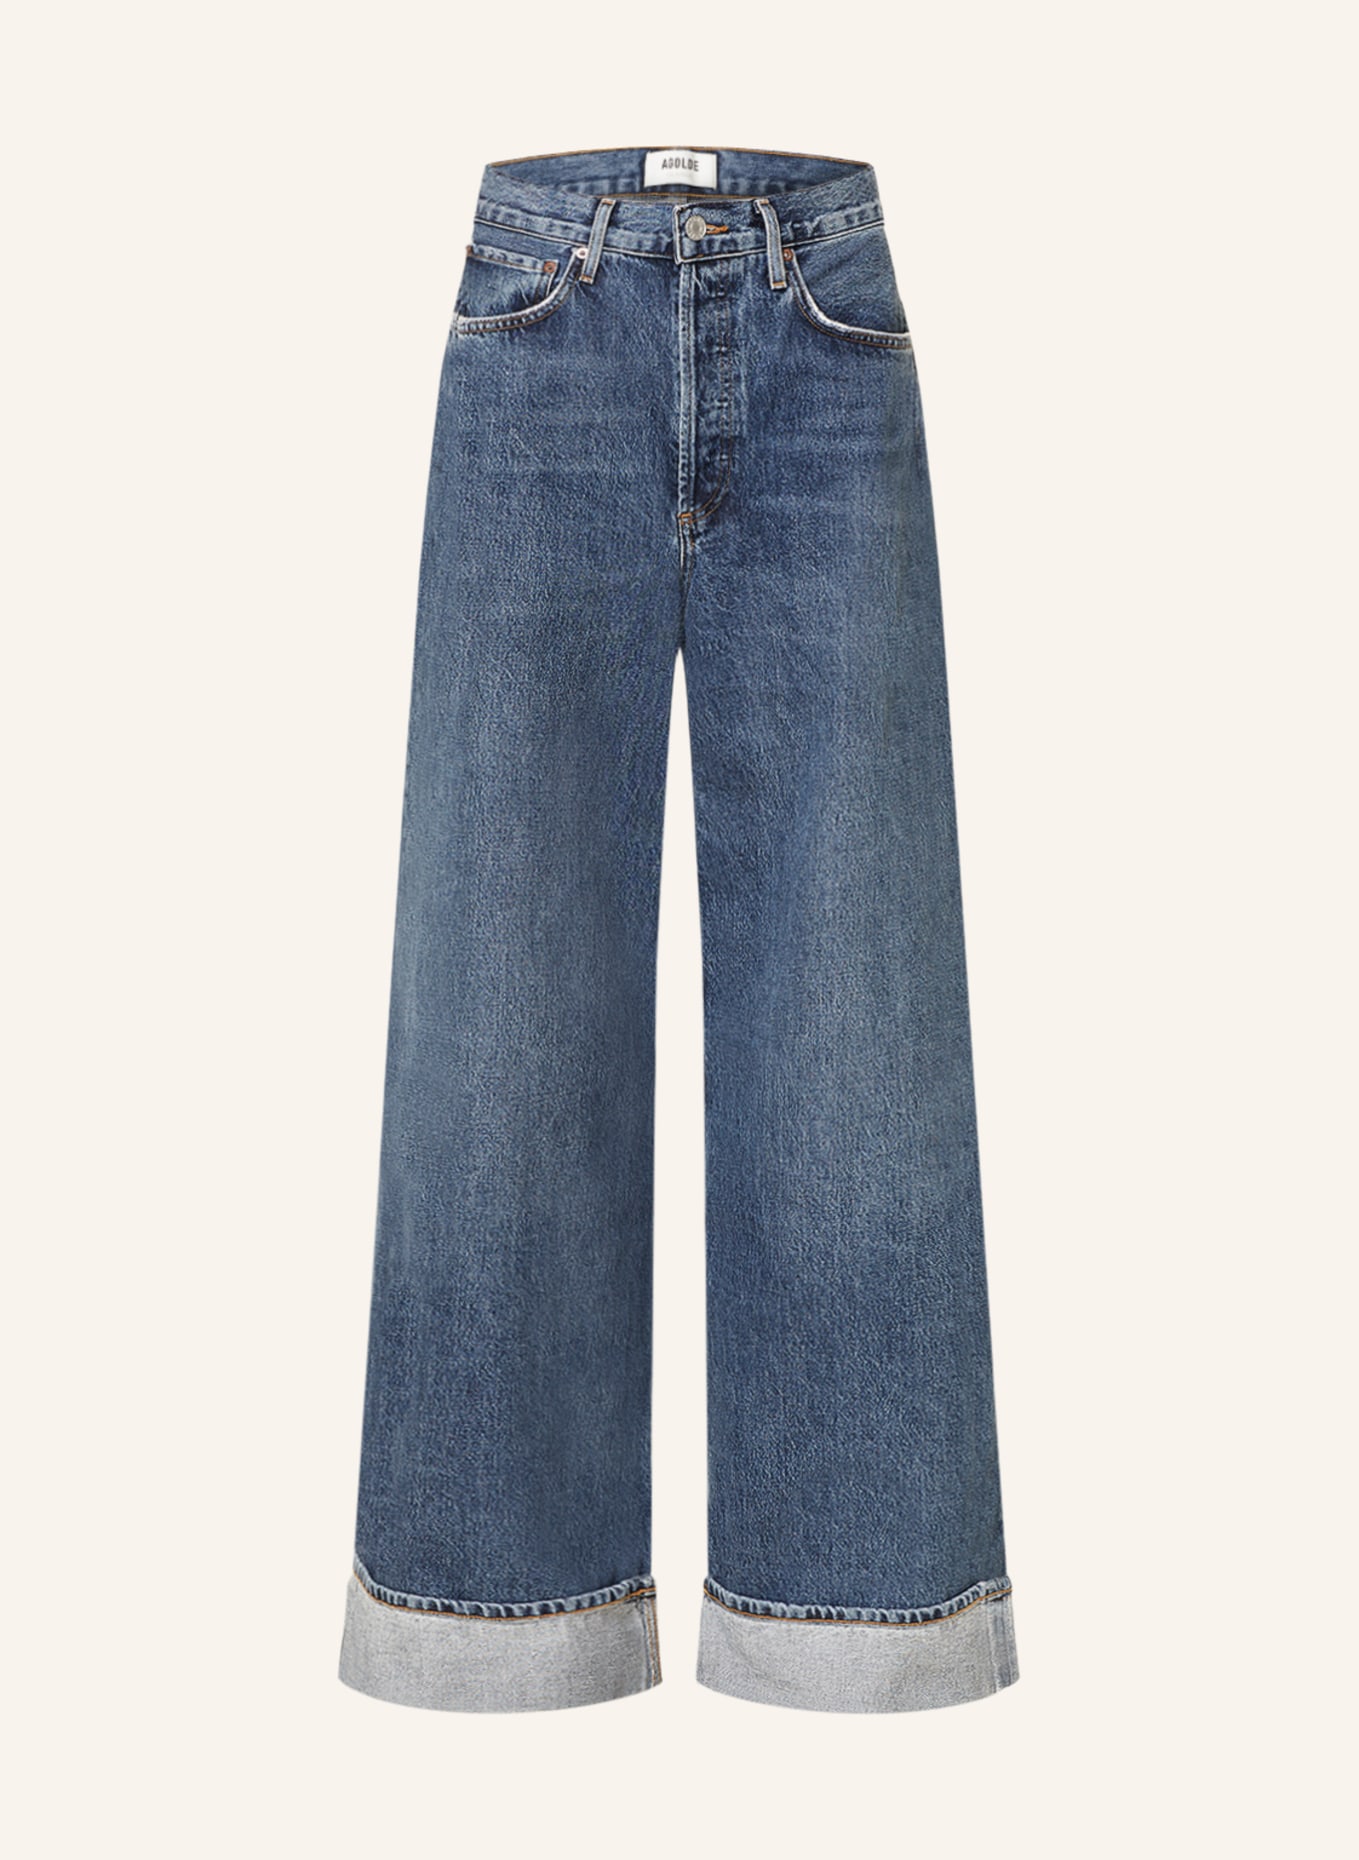 AGOLDE Flared jeans DAME JEAN, Color: Control dk ind (Image 1)